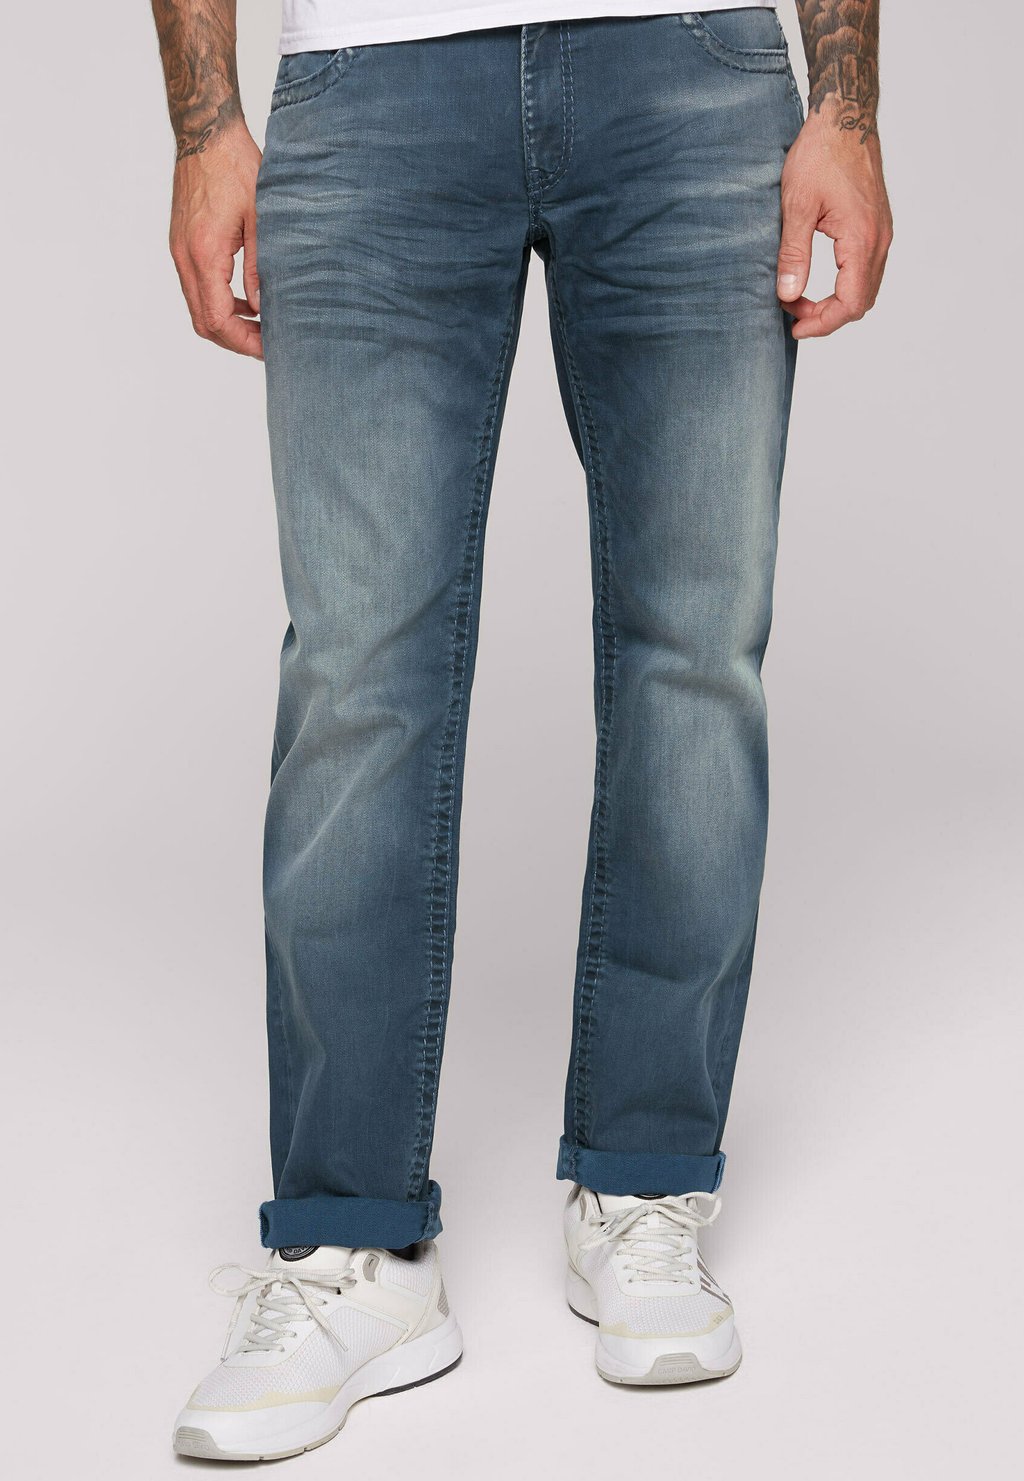 Джинсы Camp David, цвет vintage blue джинсы прямого кроя comfort fit jeans co no im retro style camp david цвет light vintage